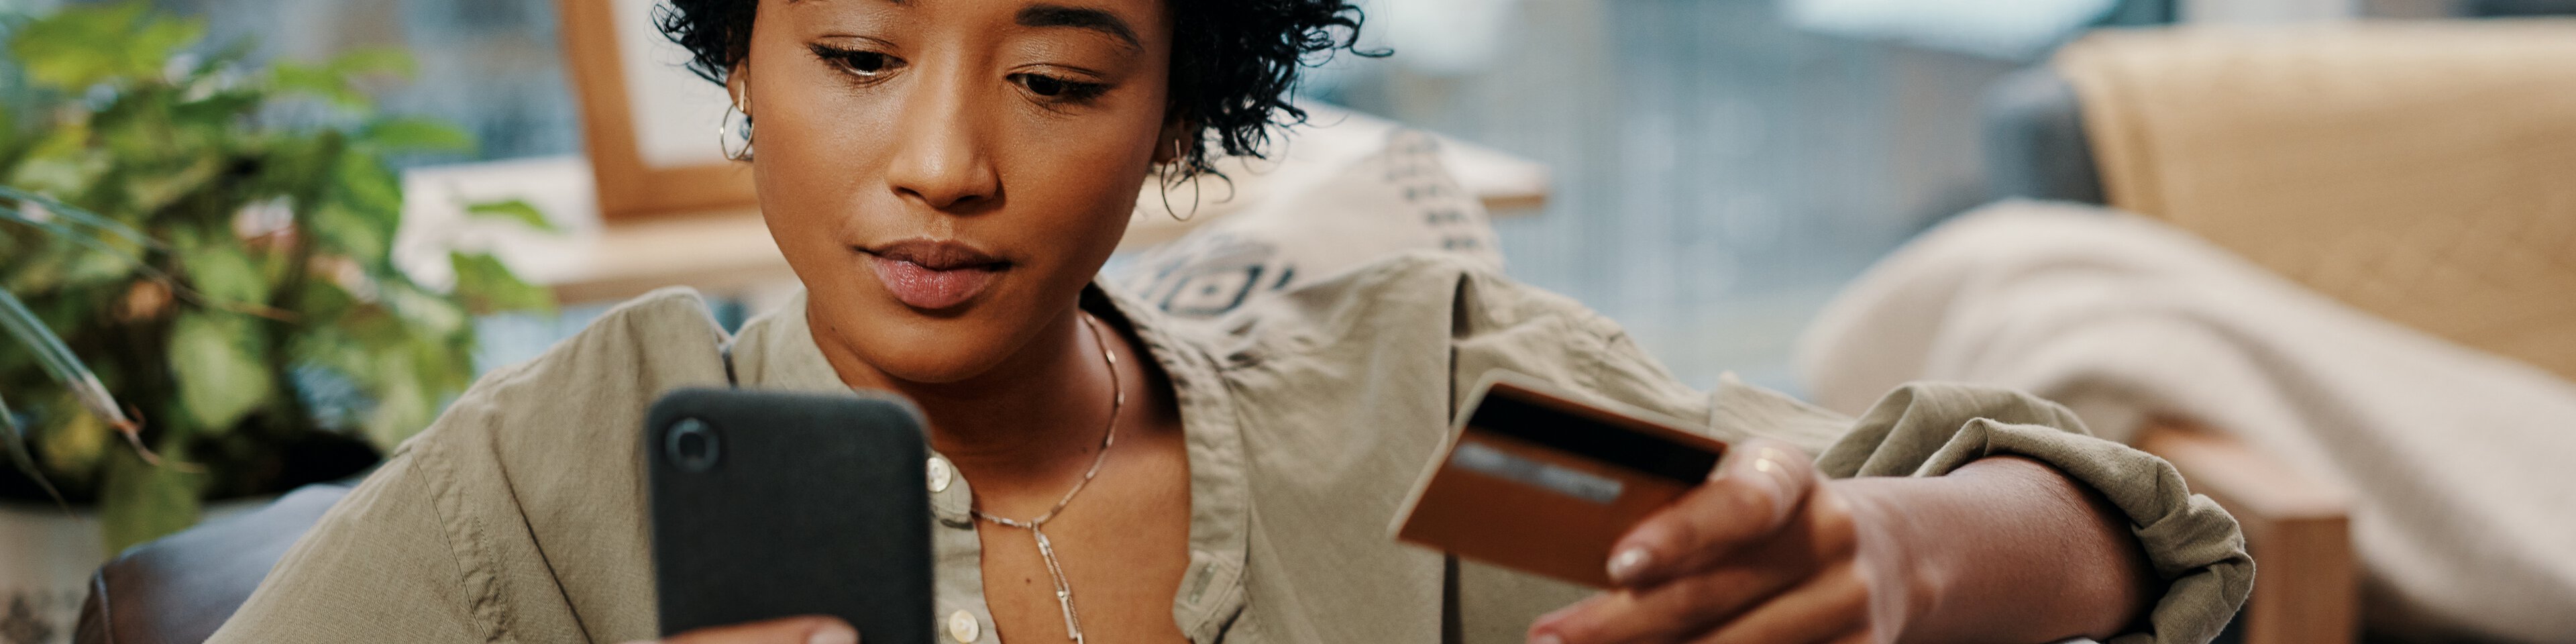 Eine junge Frau hält ihre Kreditkarte in der Hand und schaut auf ihr Handy | © Delmaine Donson - YURI ARCURS PRODUCTIONS